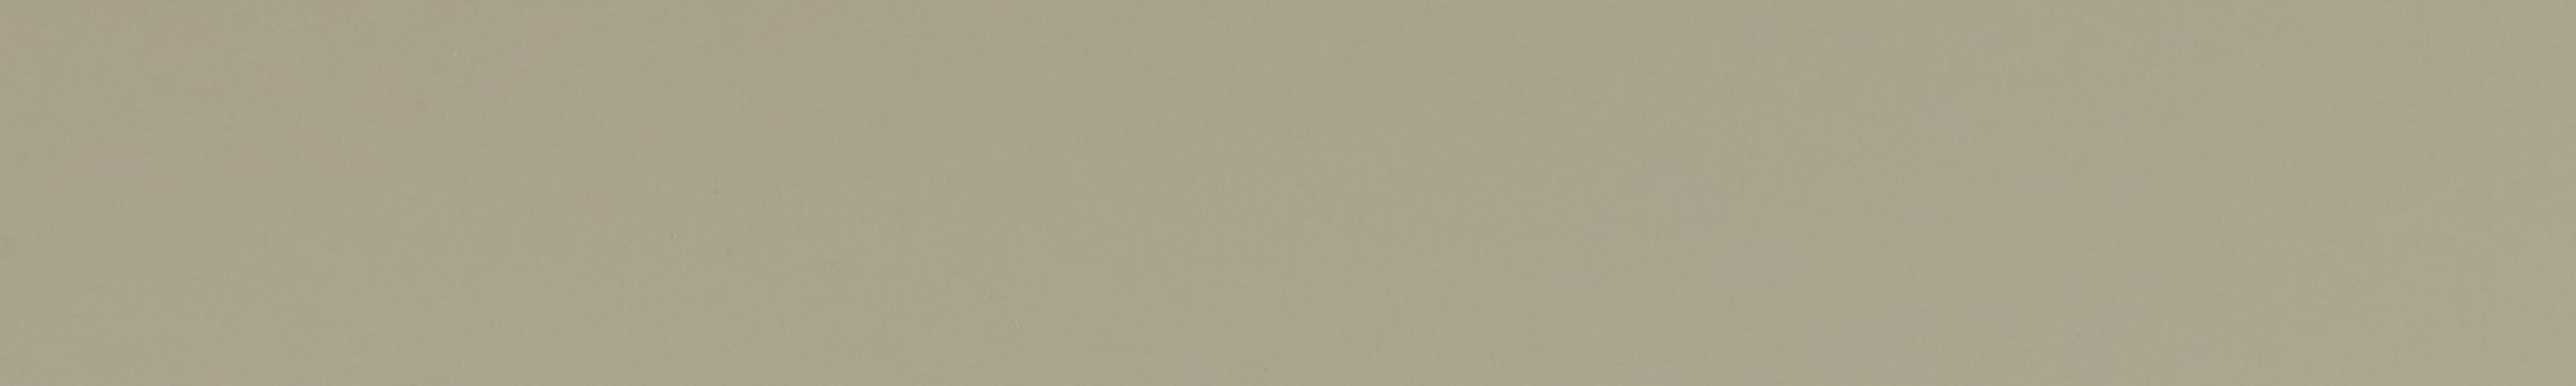 skai® smartline colore classico muschel         0,20 1250